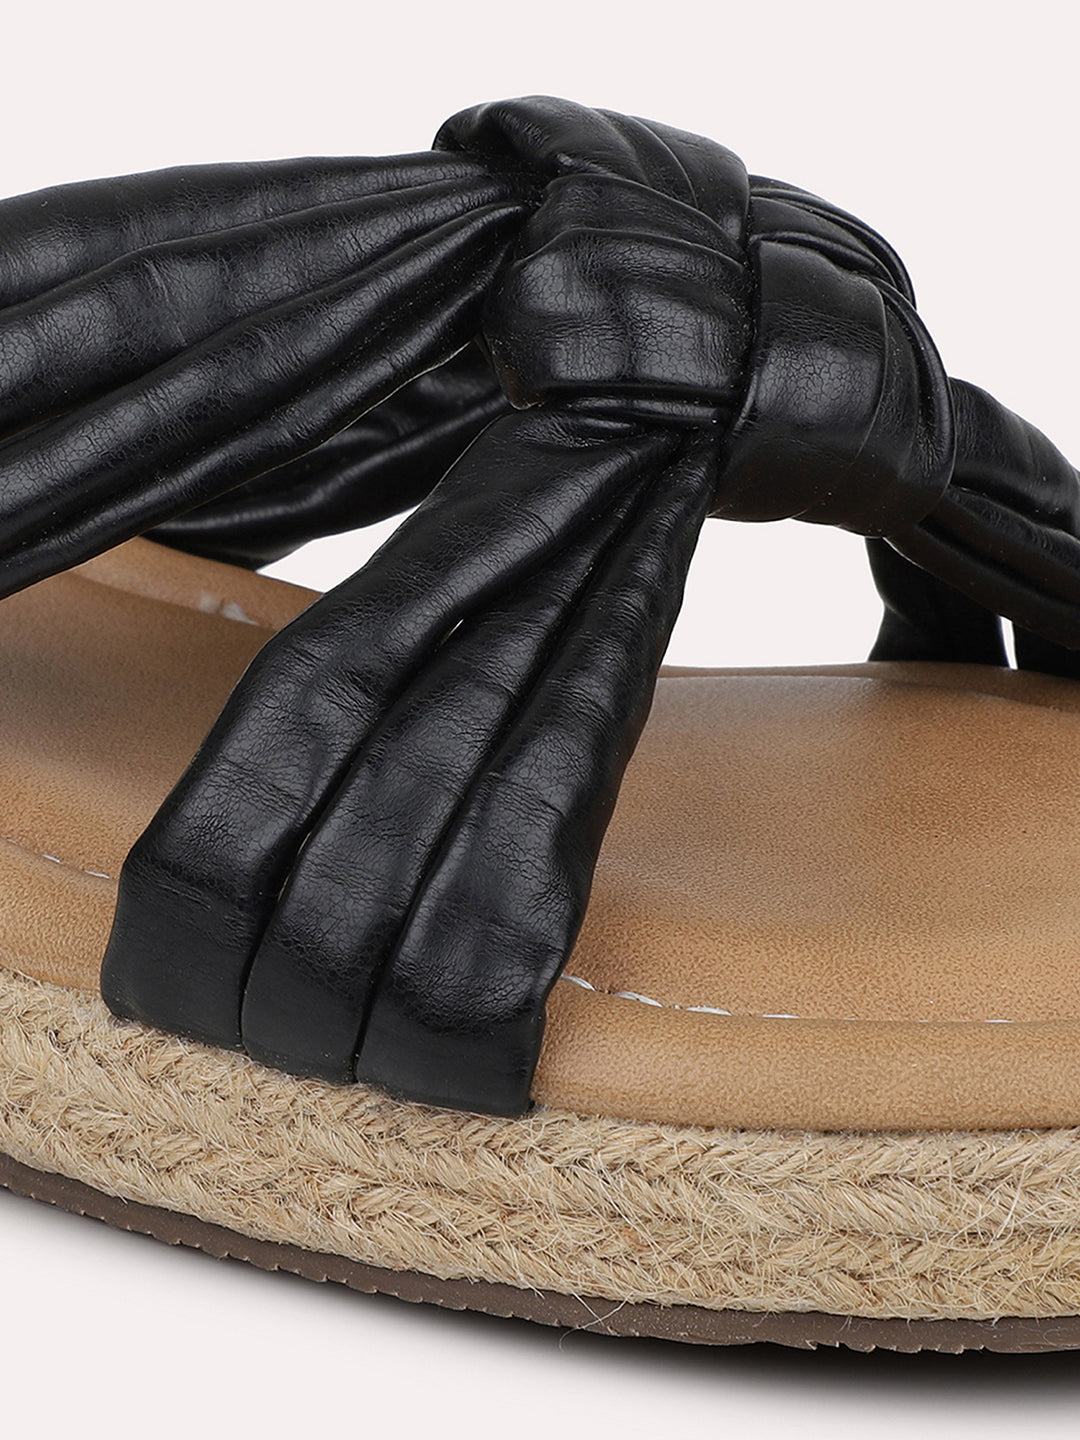 Women Black Solid Comfort Heels Sandals